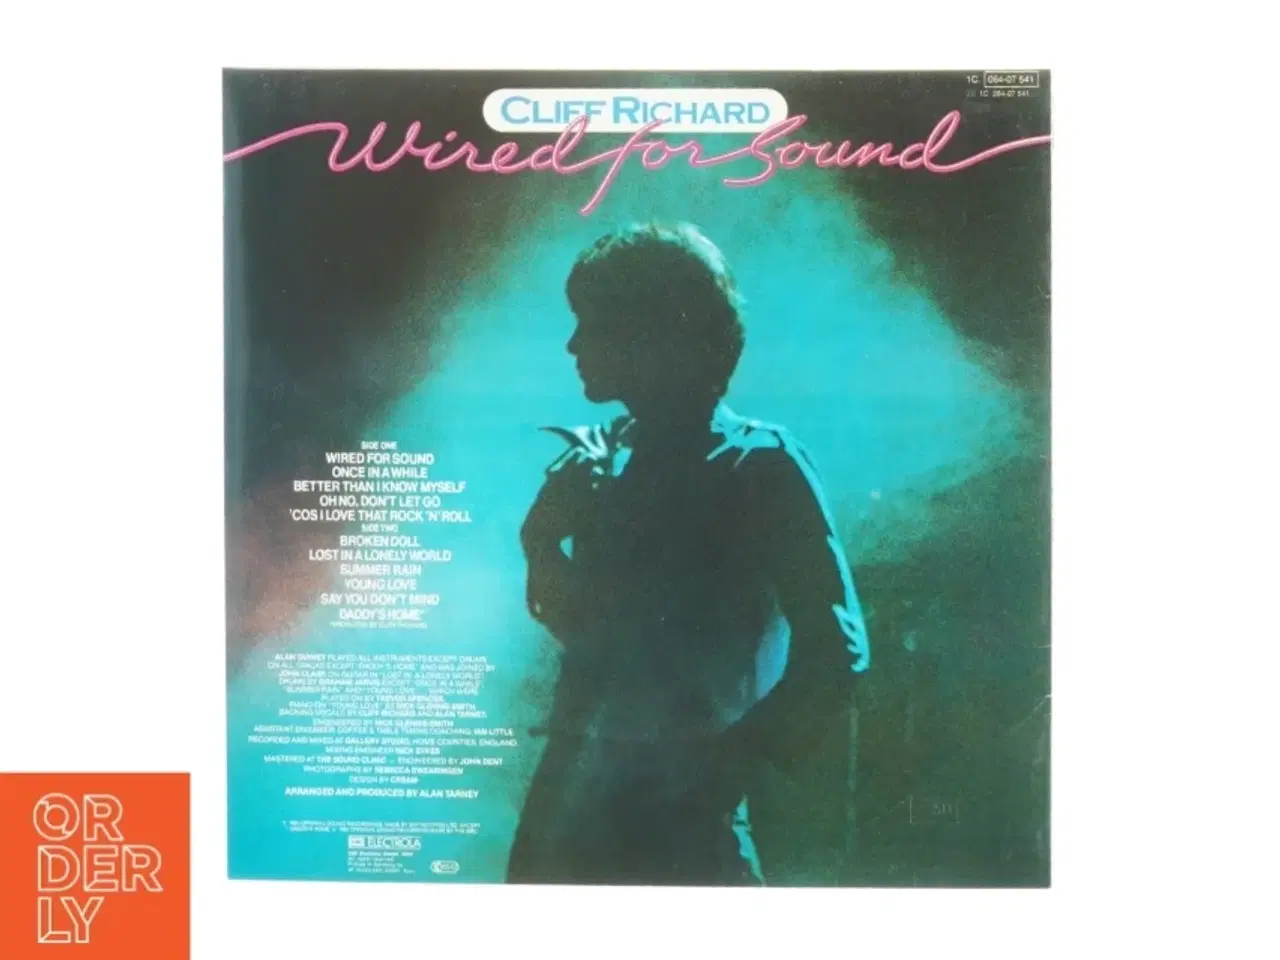 Billede 2 - Cliff Richard, Wired for sound fra Emi (str. 30 cm)